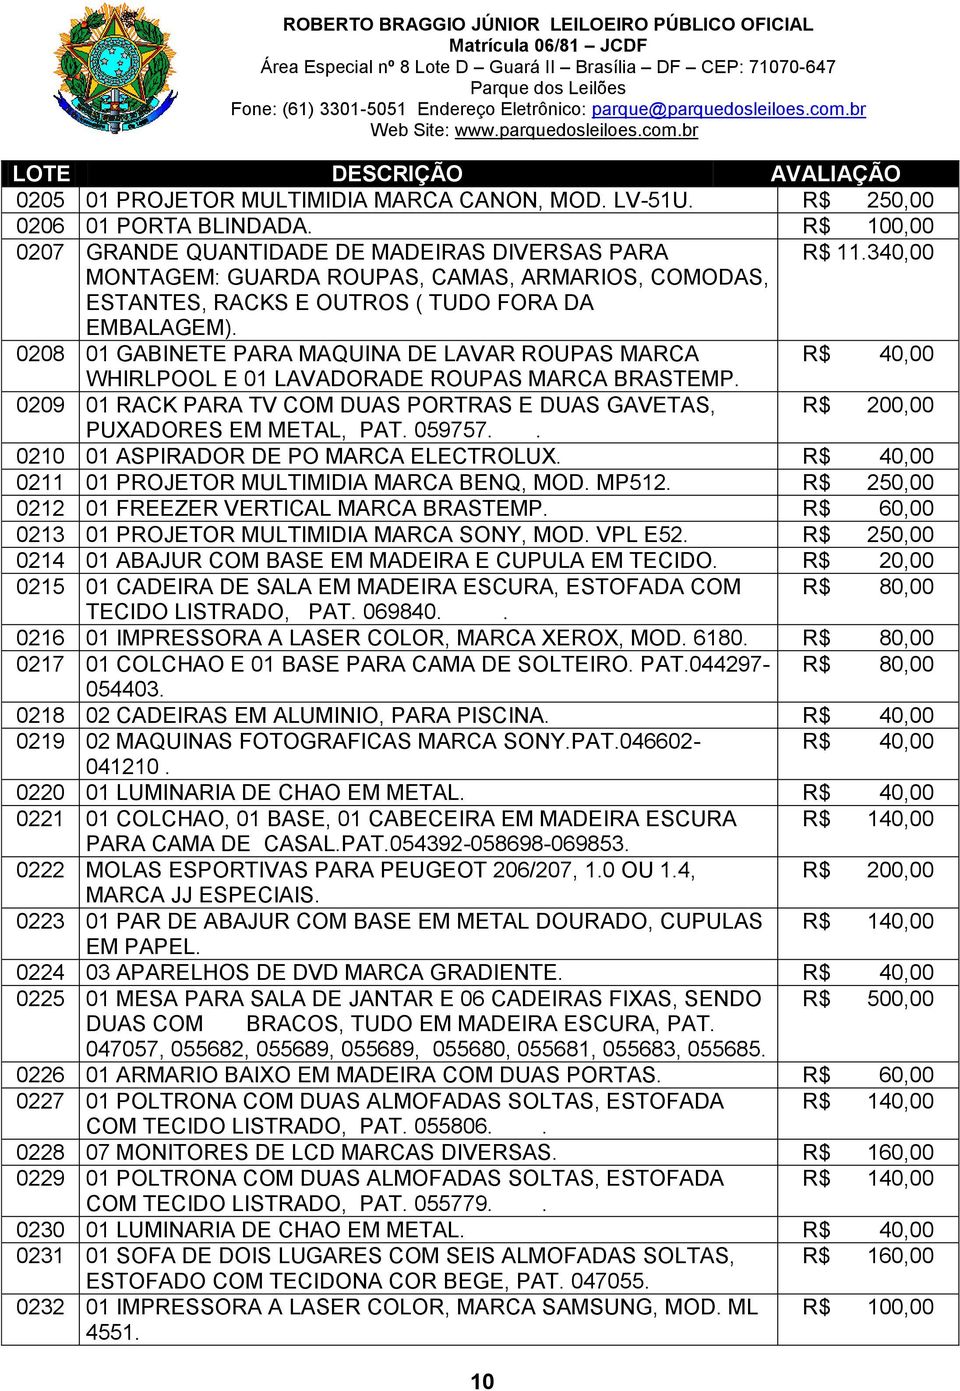 0208 01 GABINETE PARA MAQUINA DE LAVAR ROUPAS MARCA R$ 40,00 WHIRLPOOL E 01 LAVADORADE ROUPAS MARCA BRASTEMP. 0209 01 RACK PARA TV COM DUAS PORTRAS E DUAS GAVETAS, R$ 200,00 PUXADORES EM METAL, PAT.